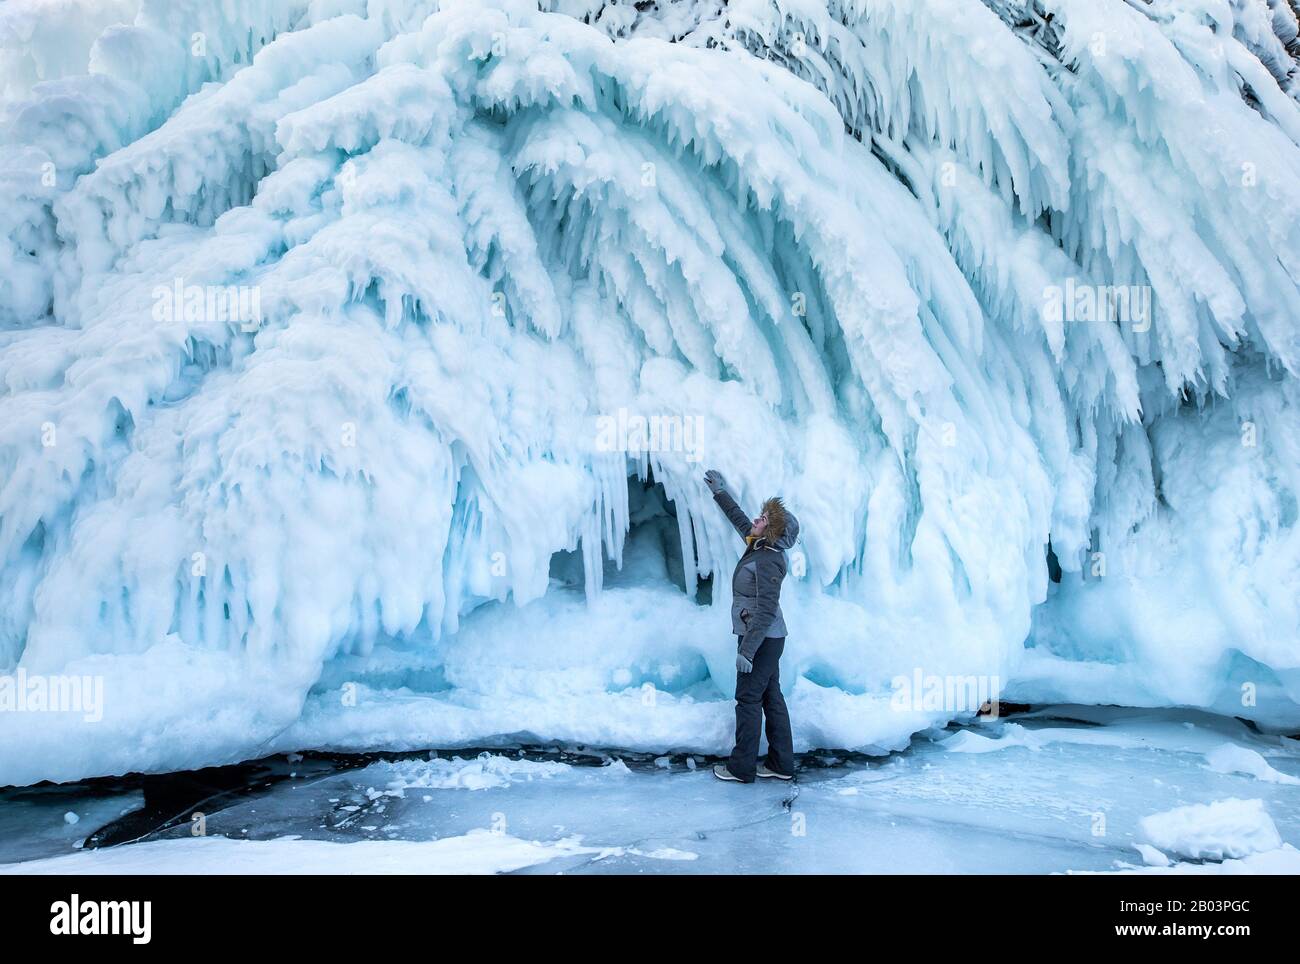 Une femme s'émerveillant devant le mur massif de glace formé par les vagues et le vent. Lac Baikal, Sibérie, Russie. Banque D'Images